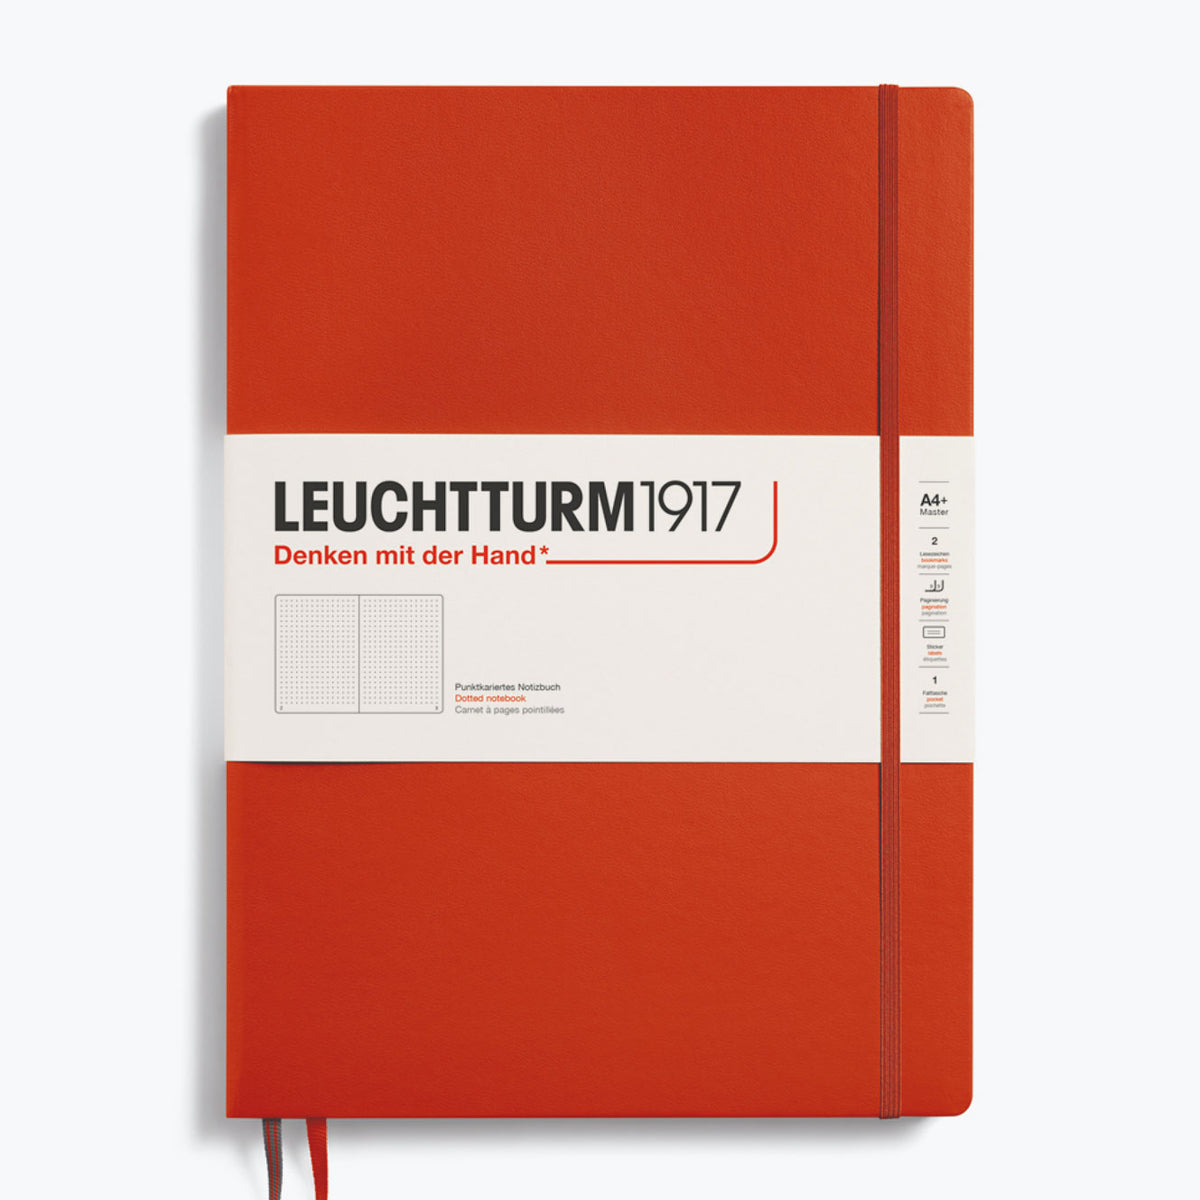 Leuchtturm1917 - Notebook - A4+ - Slim - Fox Red